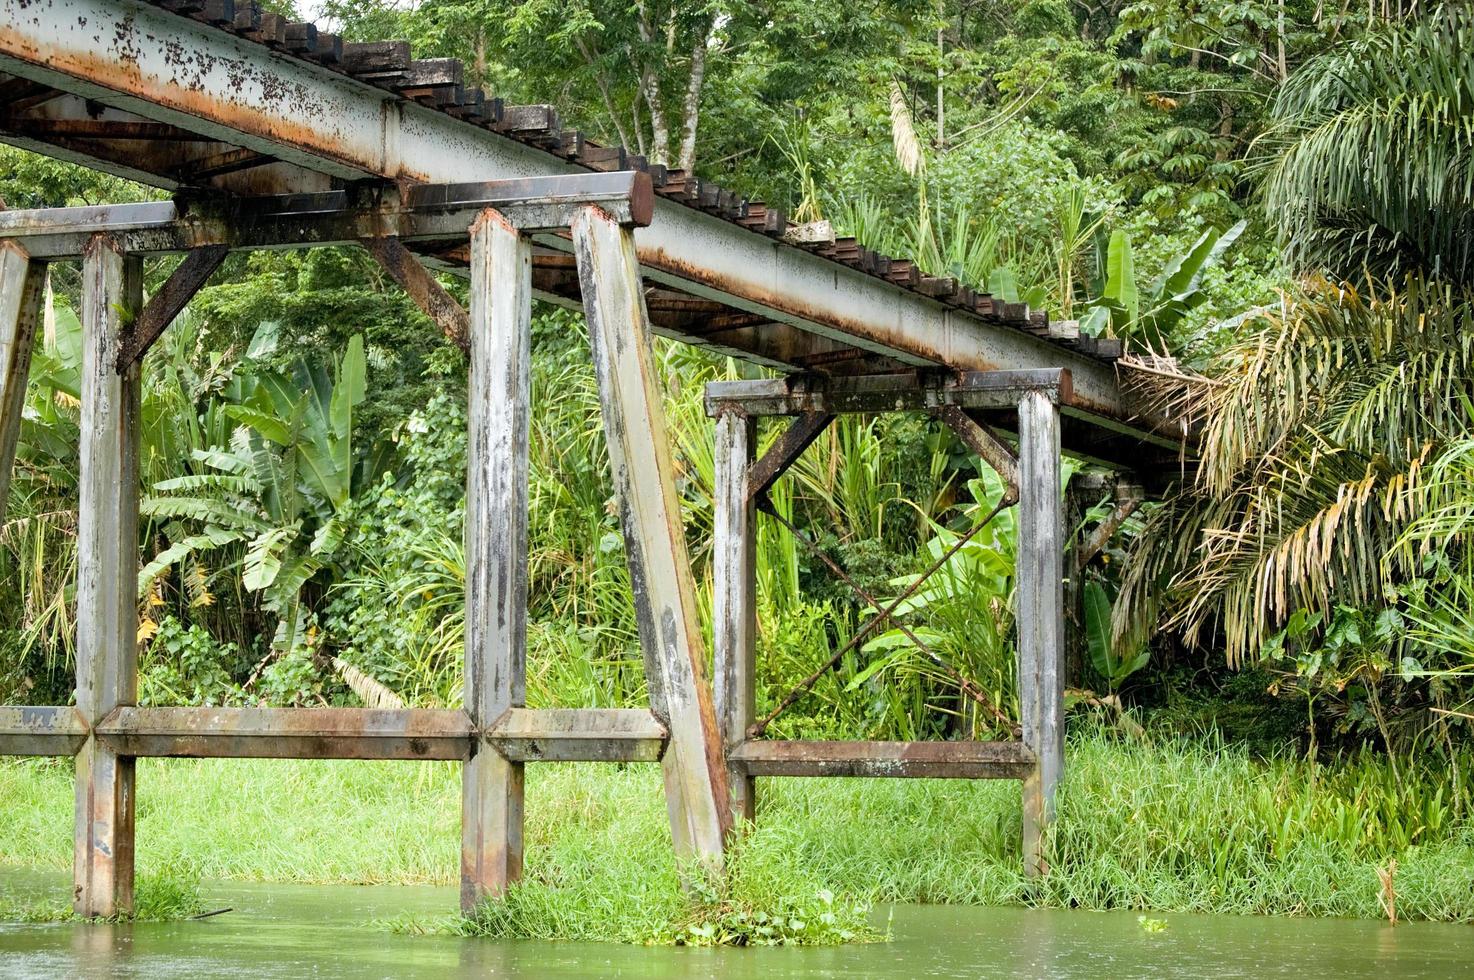 viejo puente de madera sobre un río en tortuguero, costa rica foto